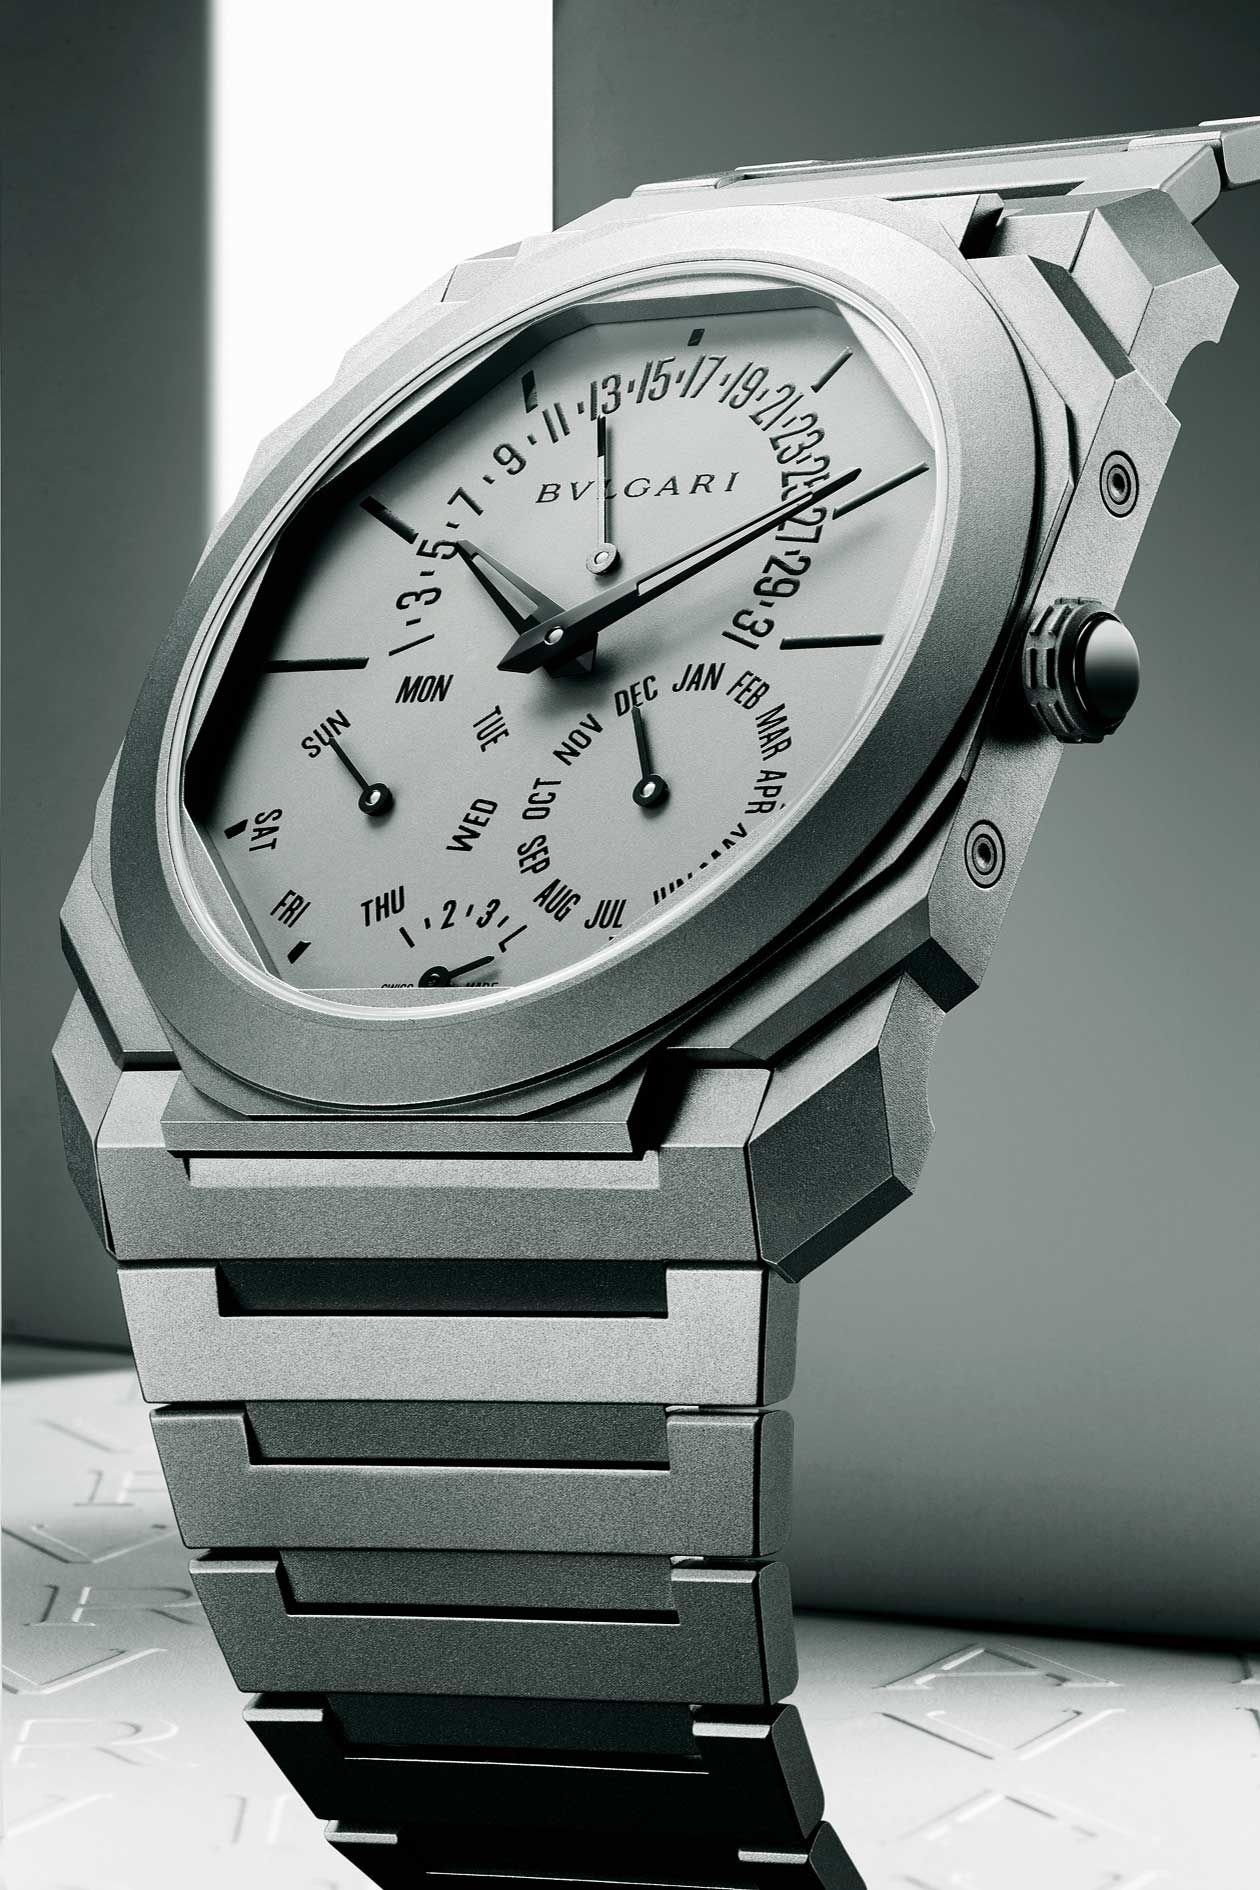 薄型で実力を見せつける、「ブルガリ」の腕時計たち